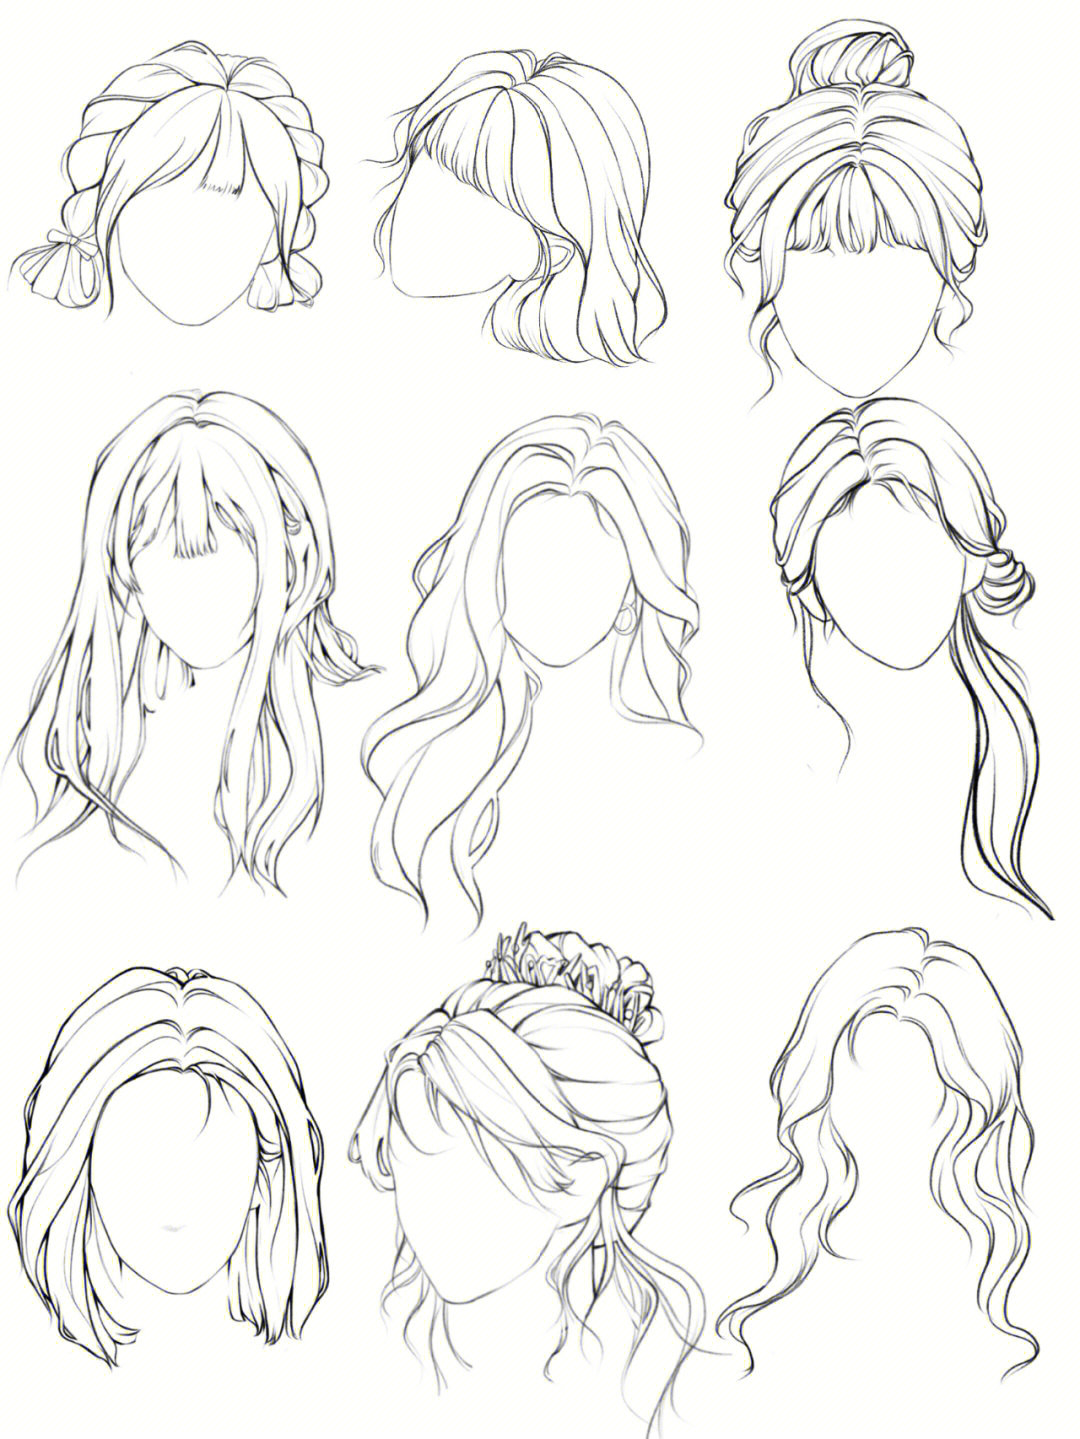 画头发的步骤(长发)图片